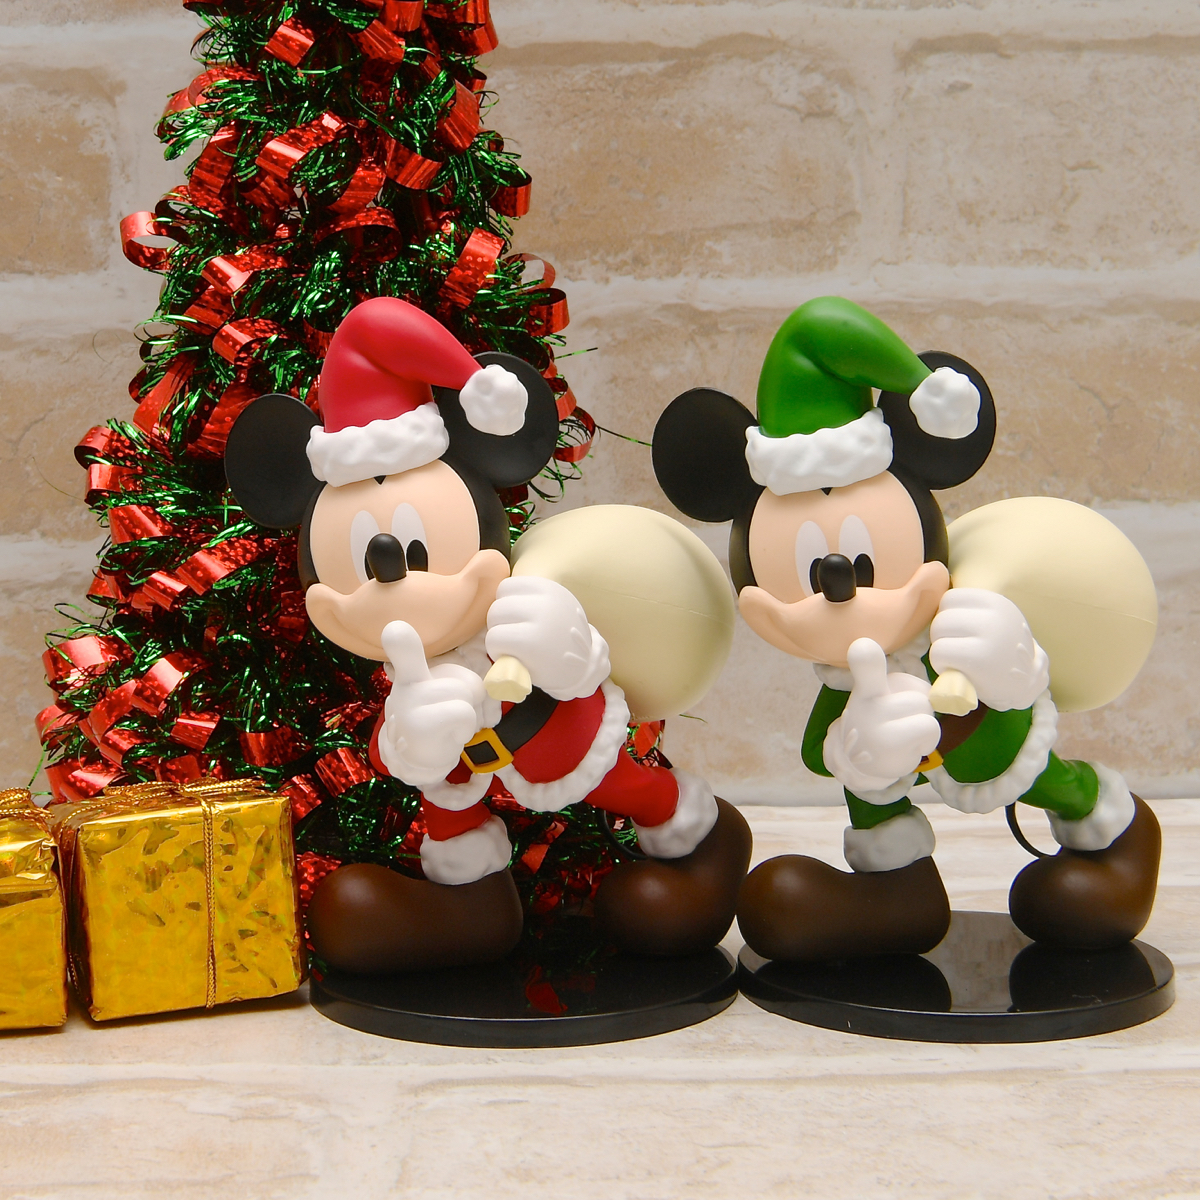 サンタコスのミッキー バンプレスト ディズニーキャラクターズ Dxf Mickey Mouse Santa Costume